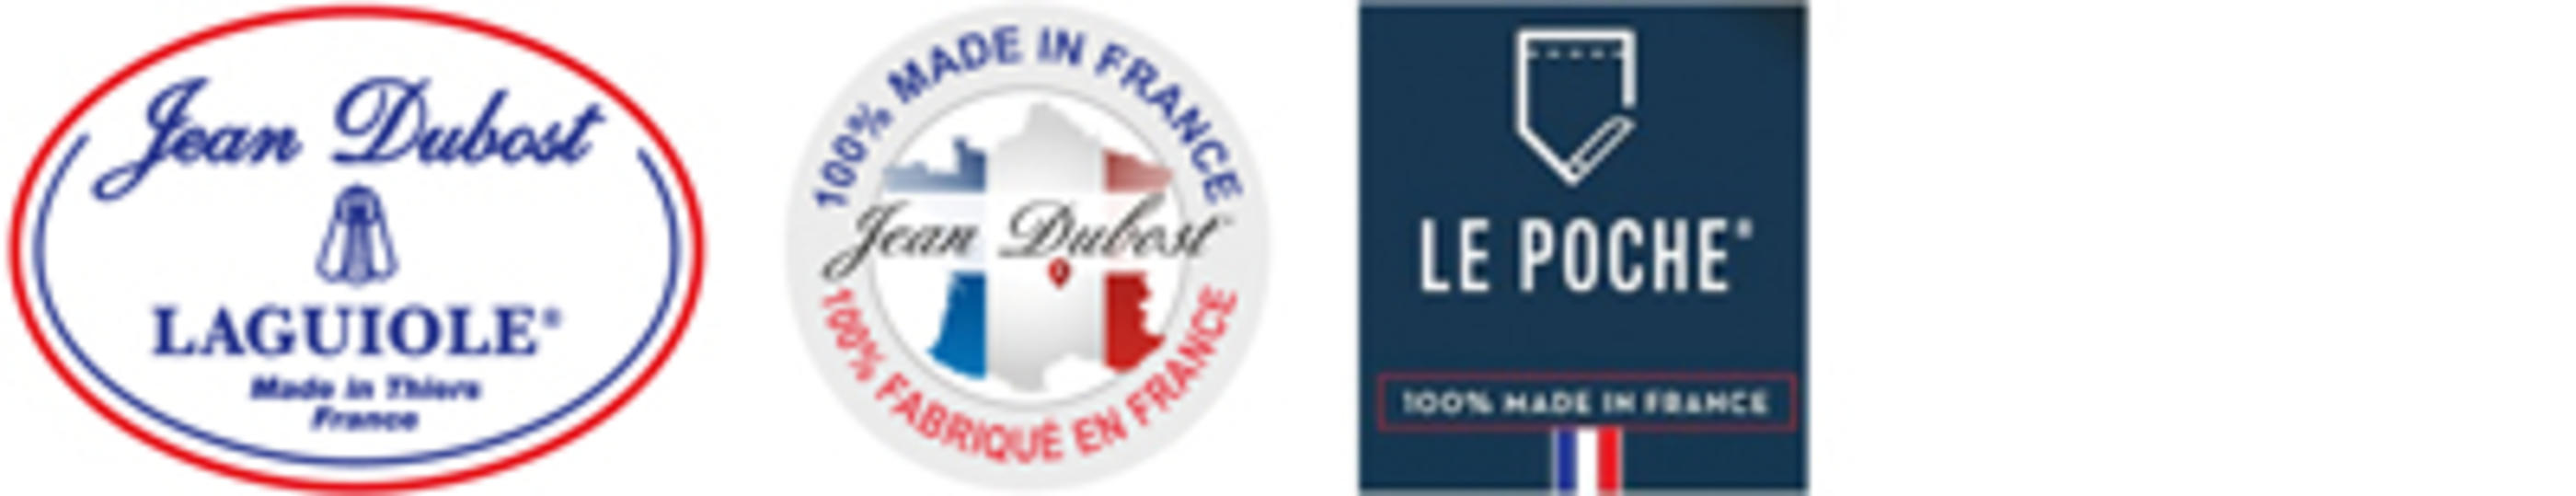 logo Jean Dubost JDL-CF-LP2-400x77px